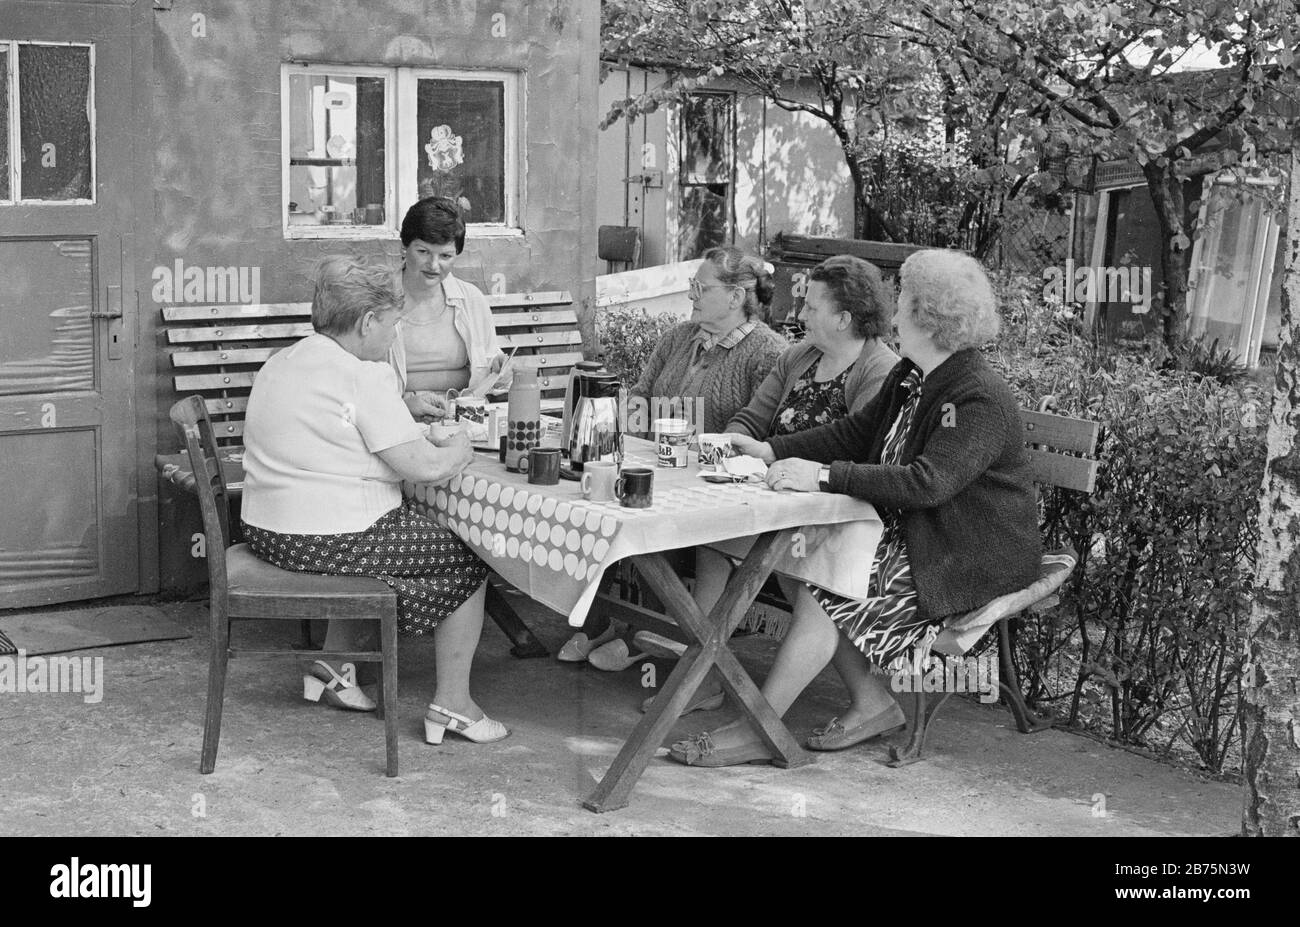 Am 19. Juni 1989 trafen sich Frauen aus einer Dortmunder Wohnanlage zum Kaffee in einer Kleingartenanlage. [Automatisierte Übersetzung] Stockfoto